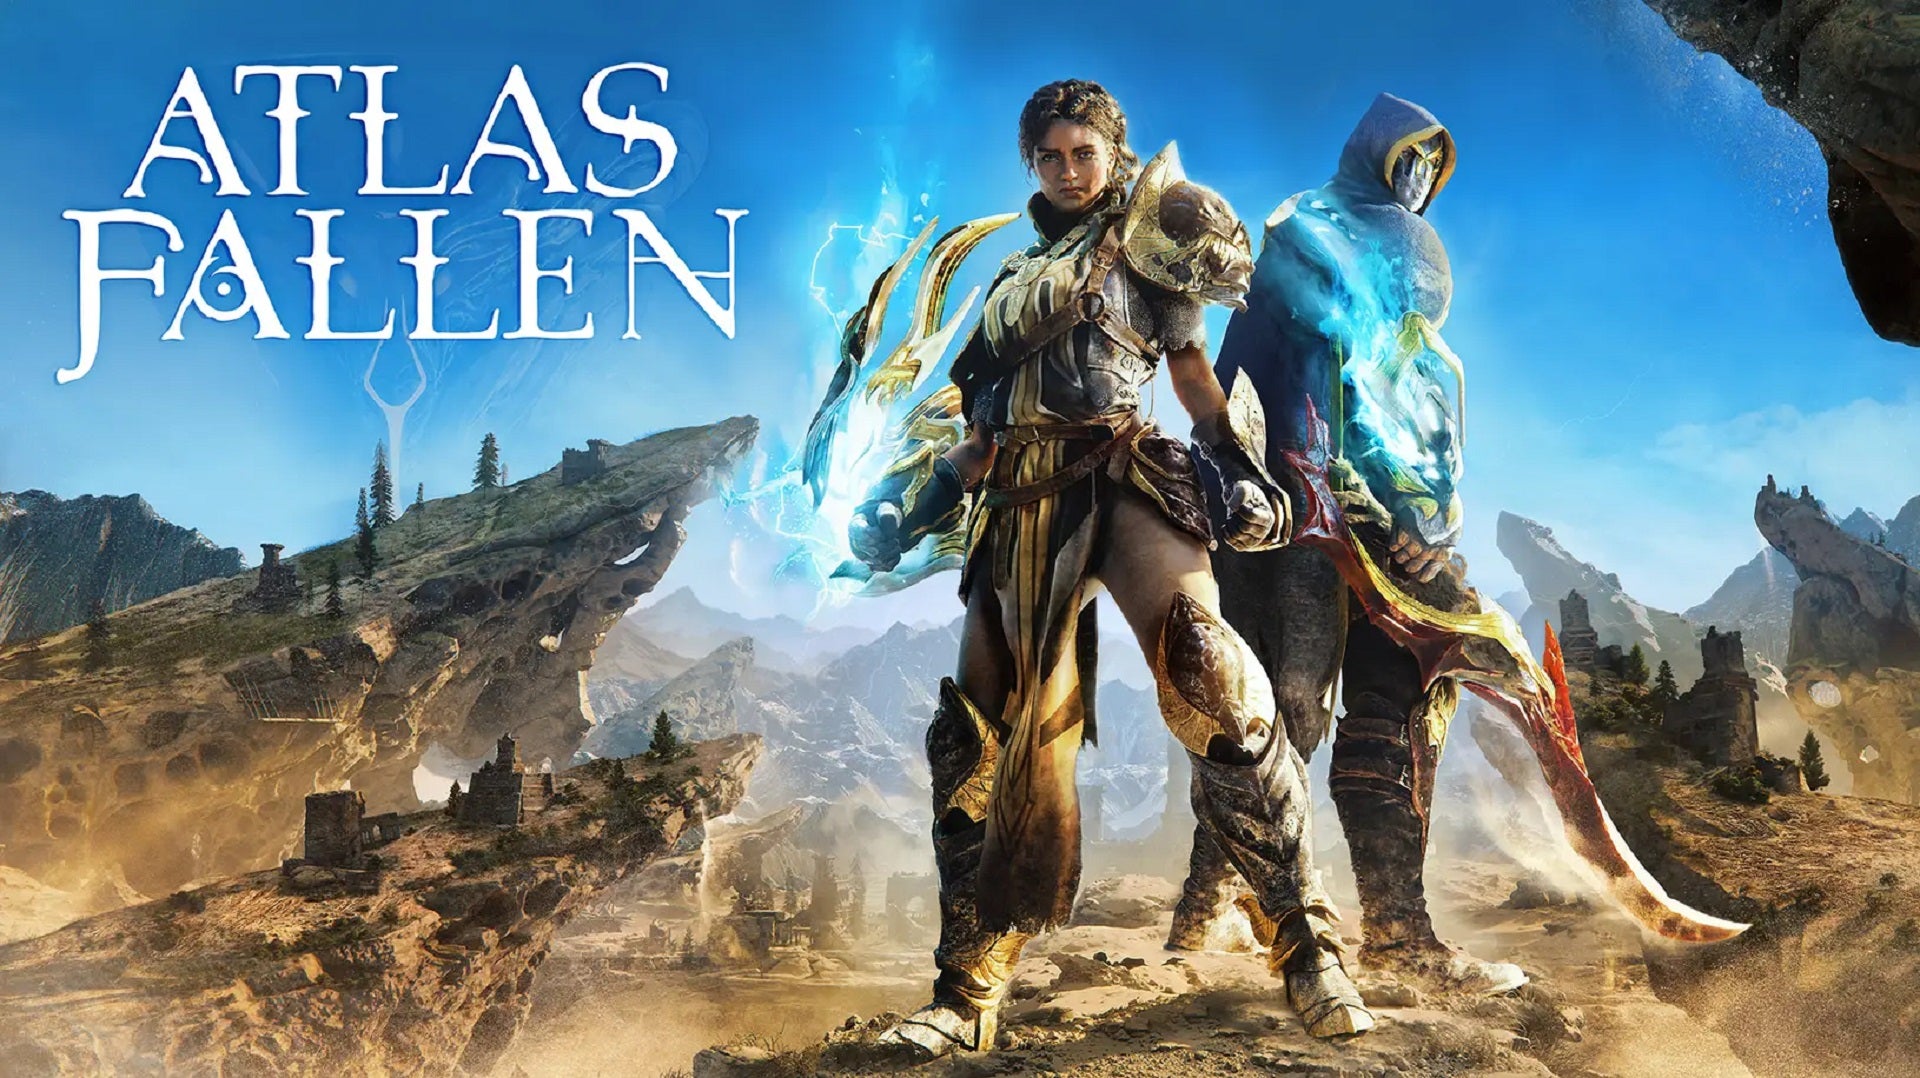 Atlas Fallen key art from the official reveal at gamescom 2022